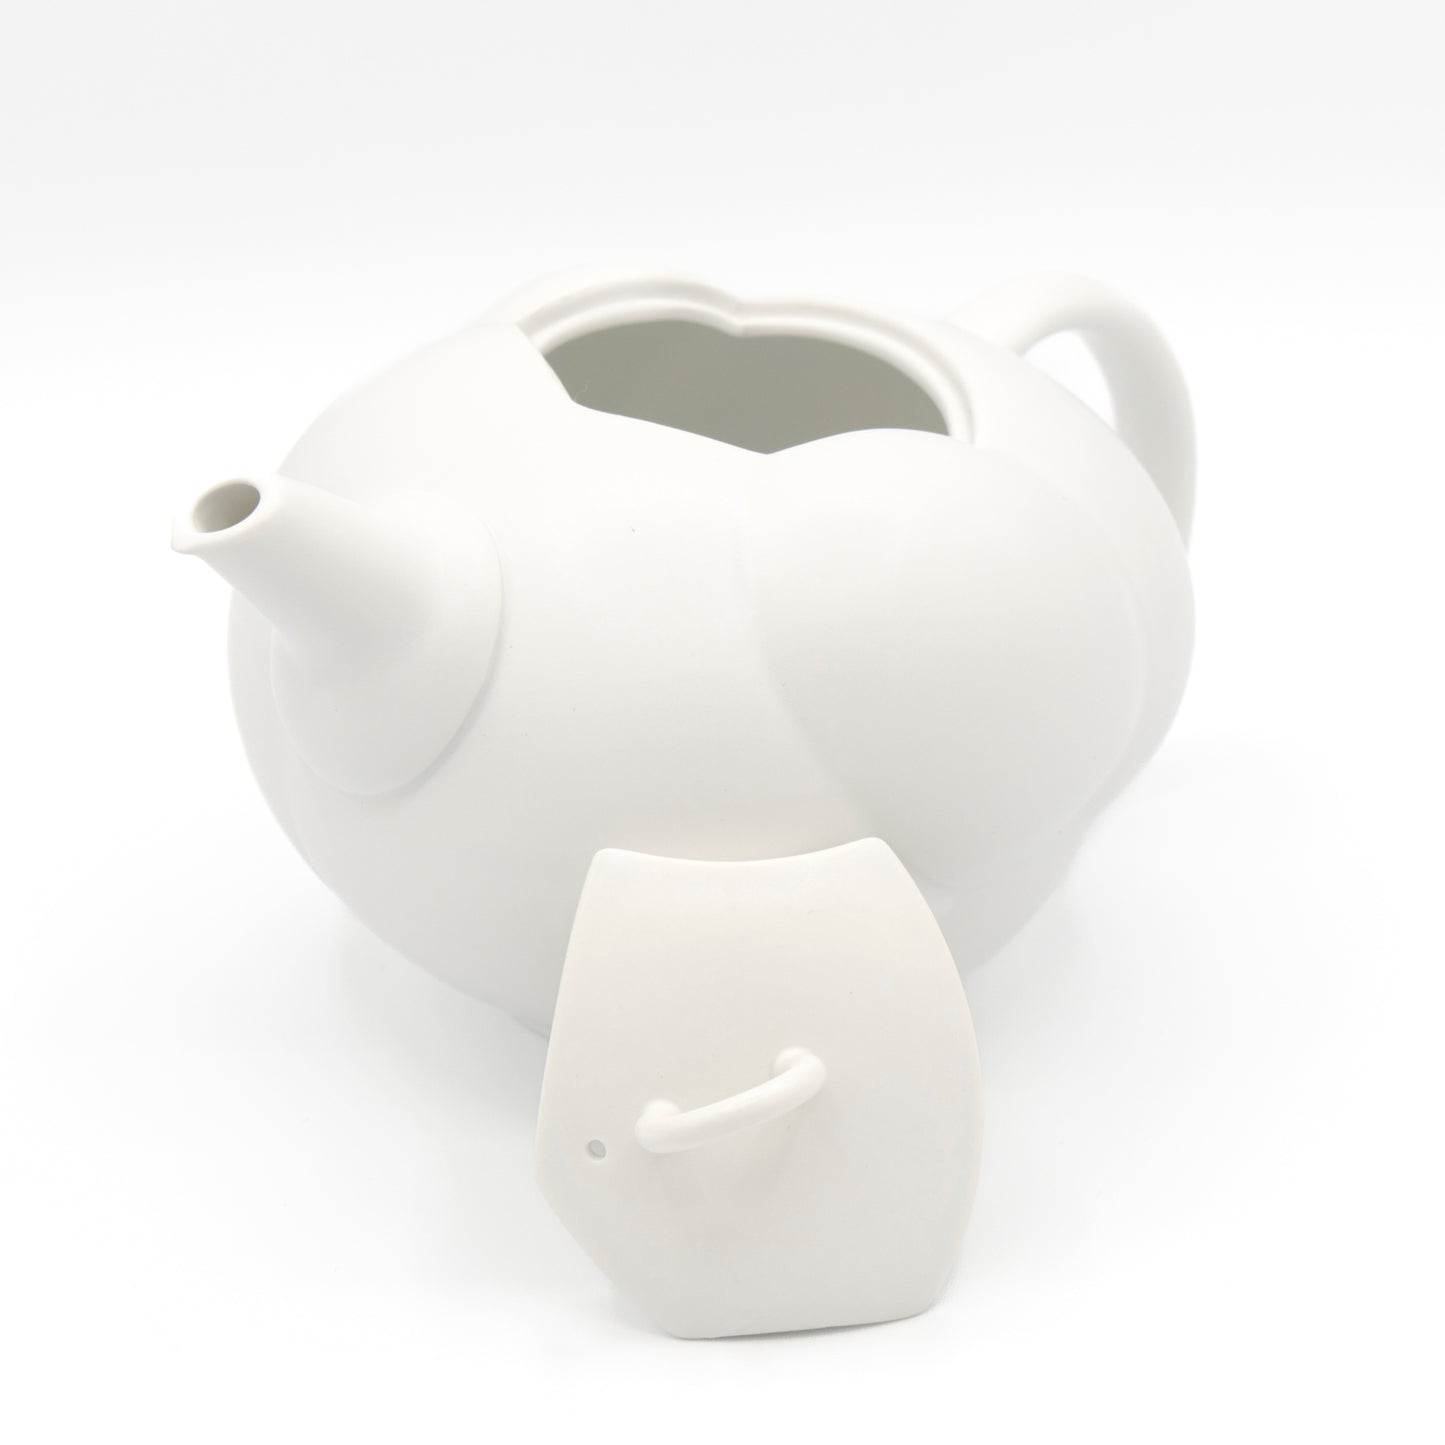 224 Cloud Nine Tea pot